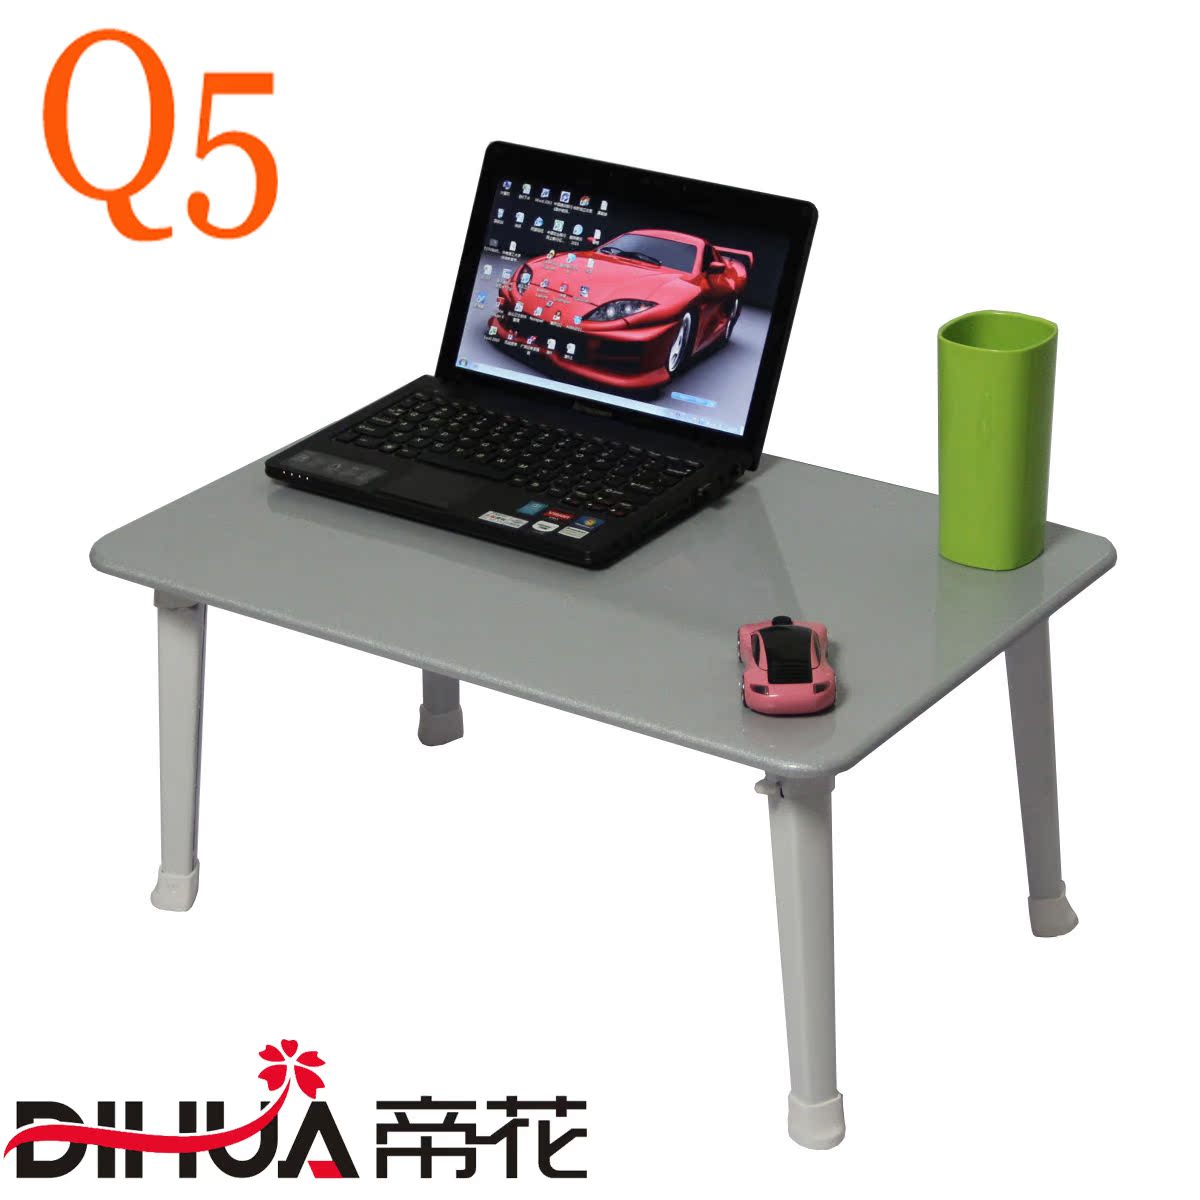 帝花Q5 笔记本电脑桌 床上电脑桌 床上折叠电脑台 学生桌 小桌子